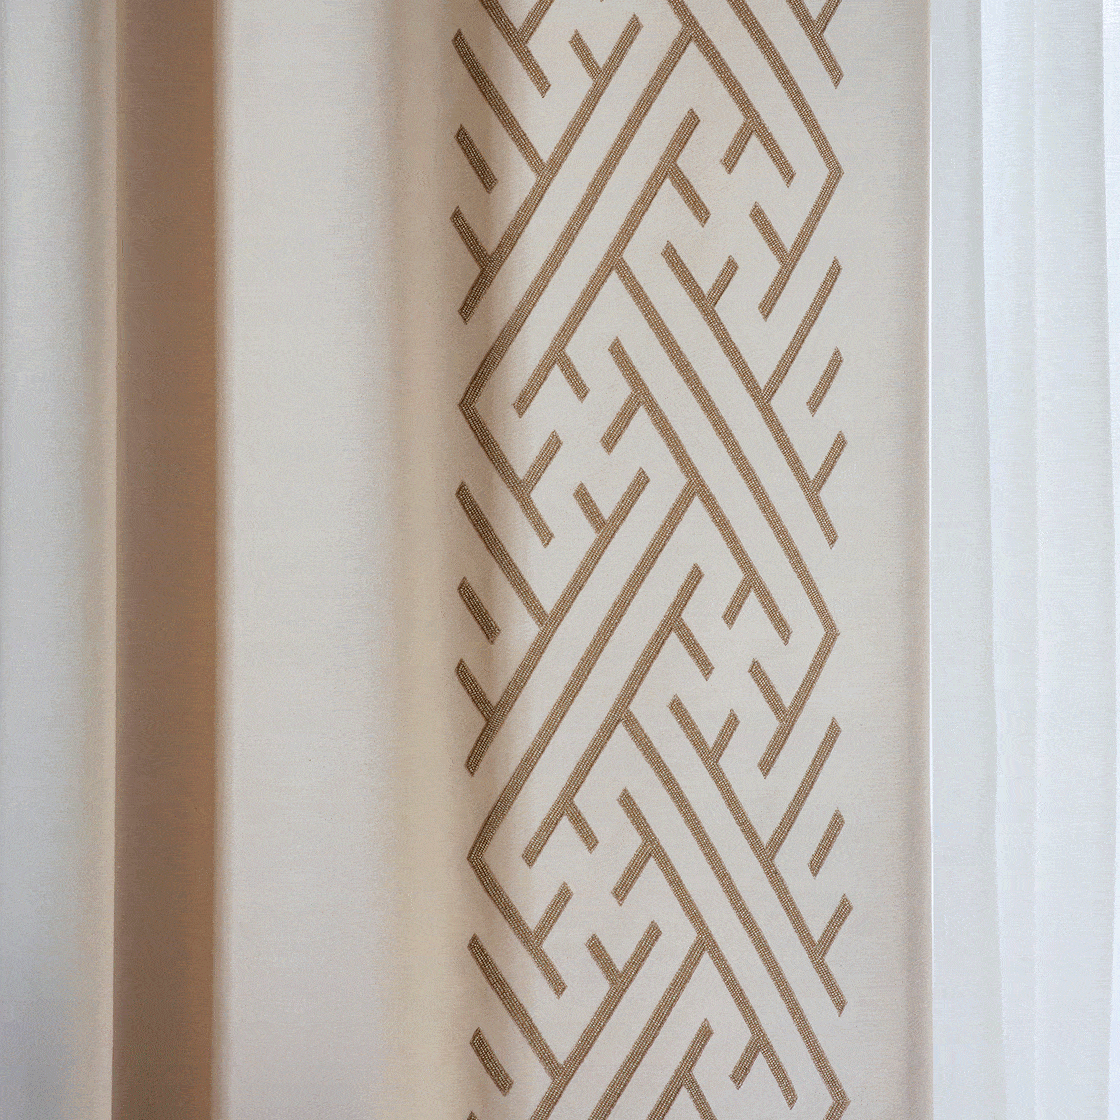 Elektra embroidery on drapes in Eriskay wool - Cloud - Beaumont & Fletcher